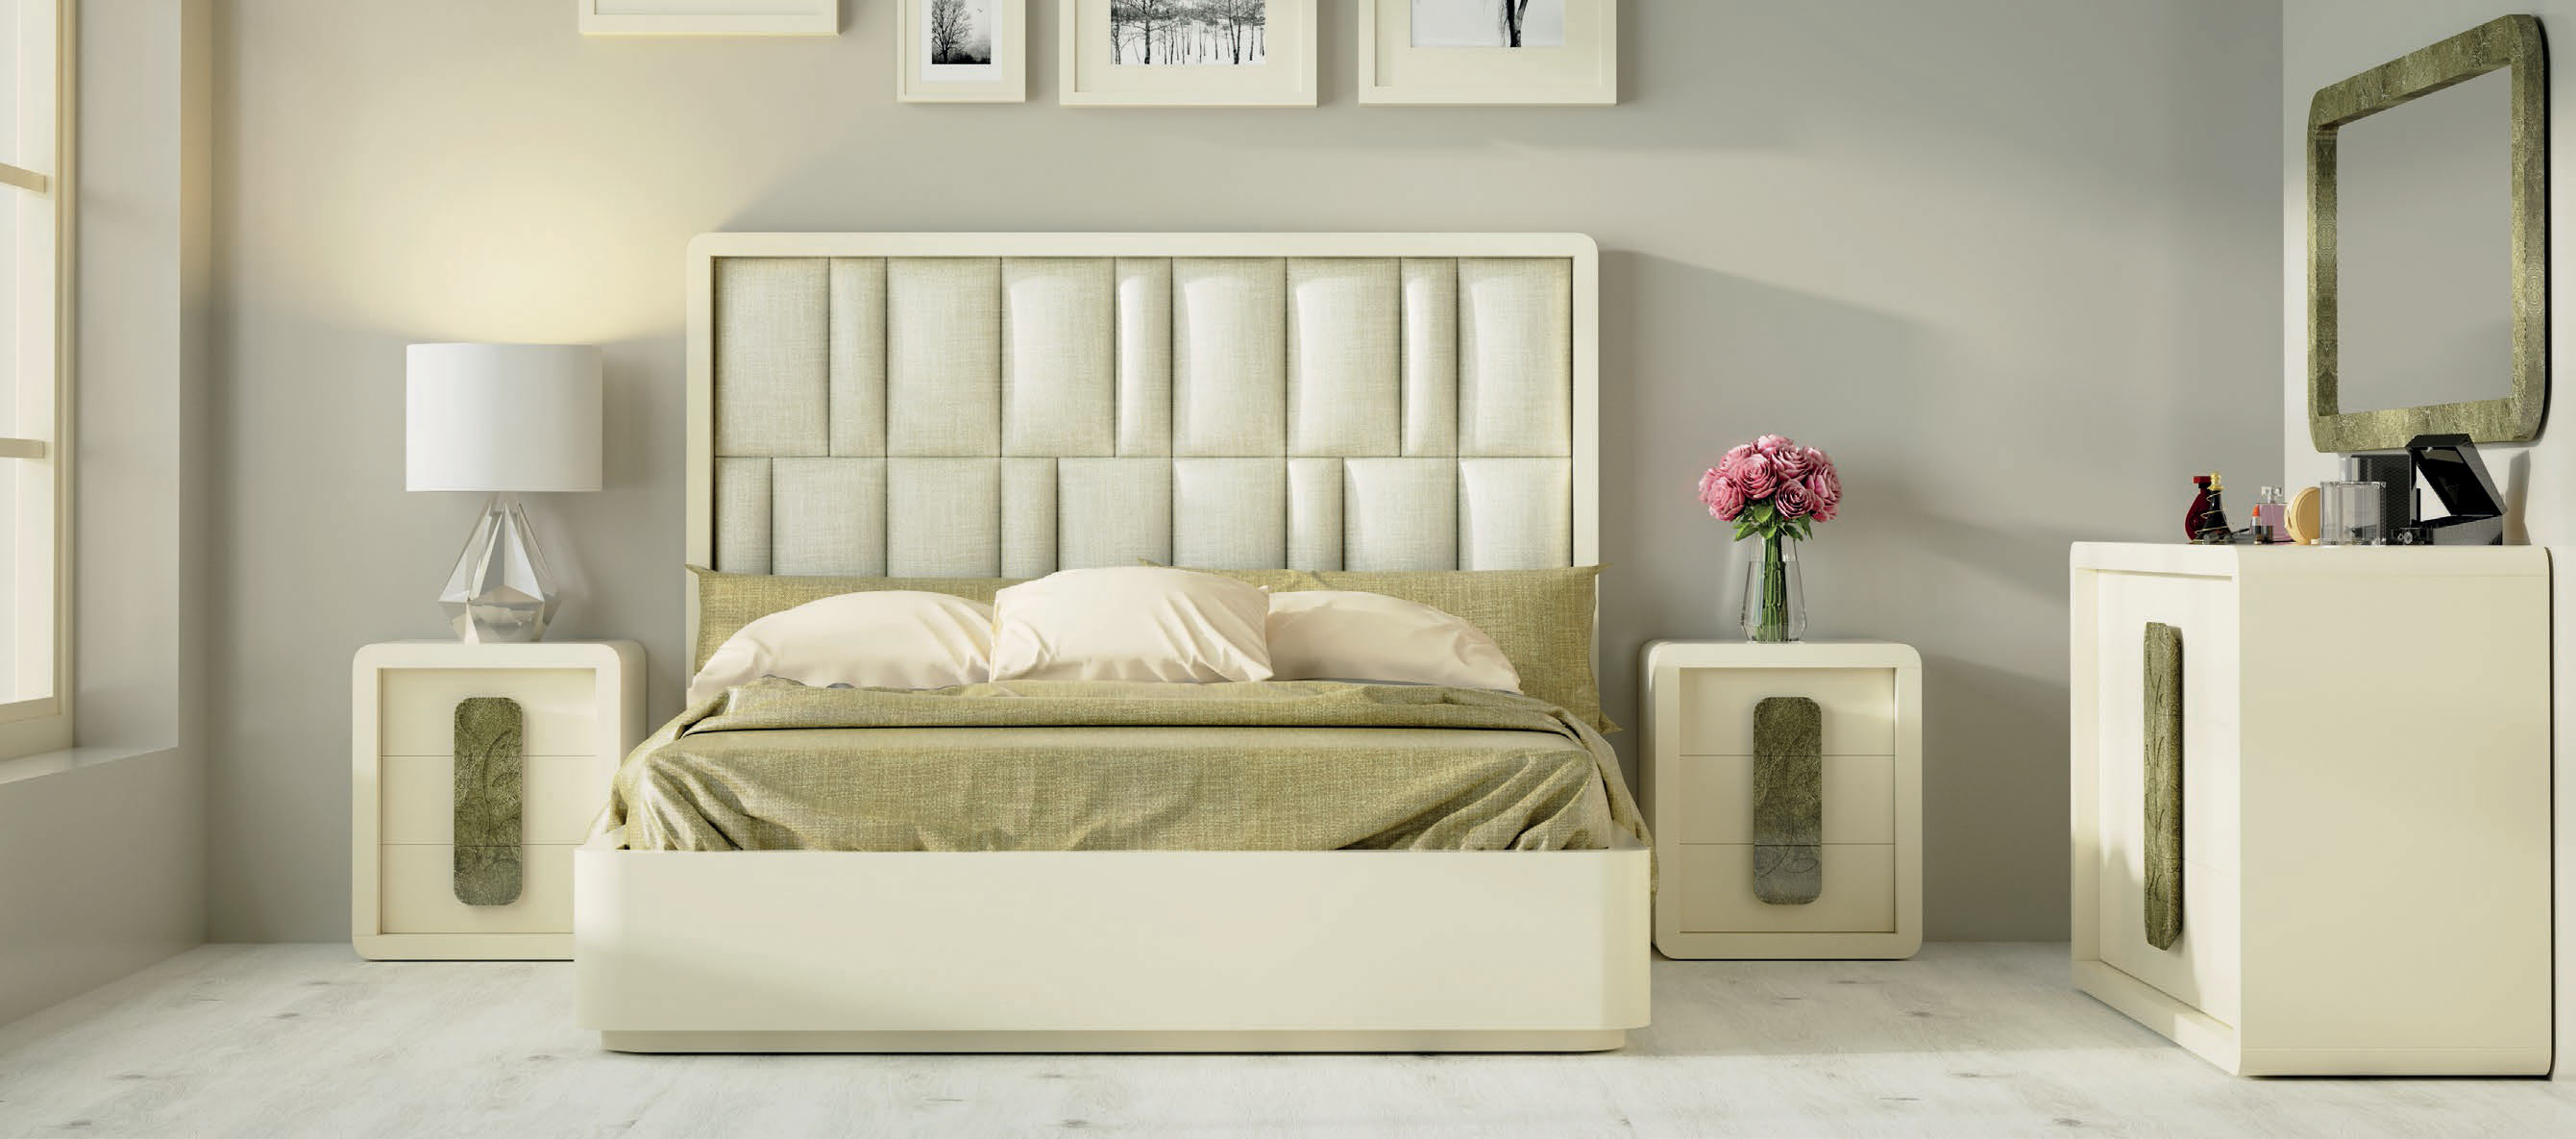 Brands Franco Furniture Avanty Bedrooms, Spain DOR 169